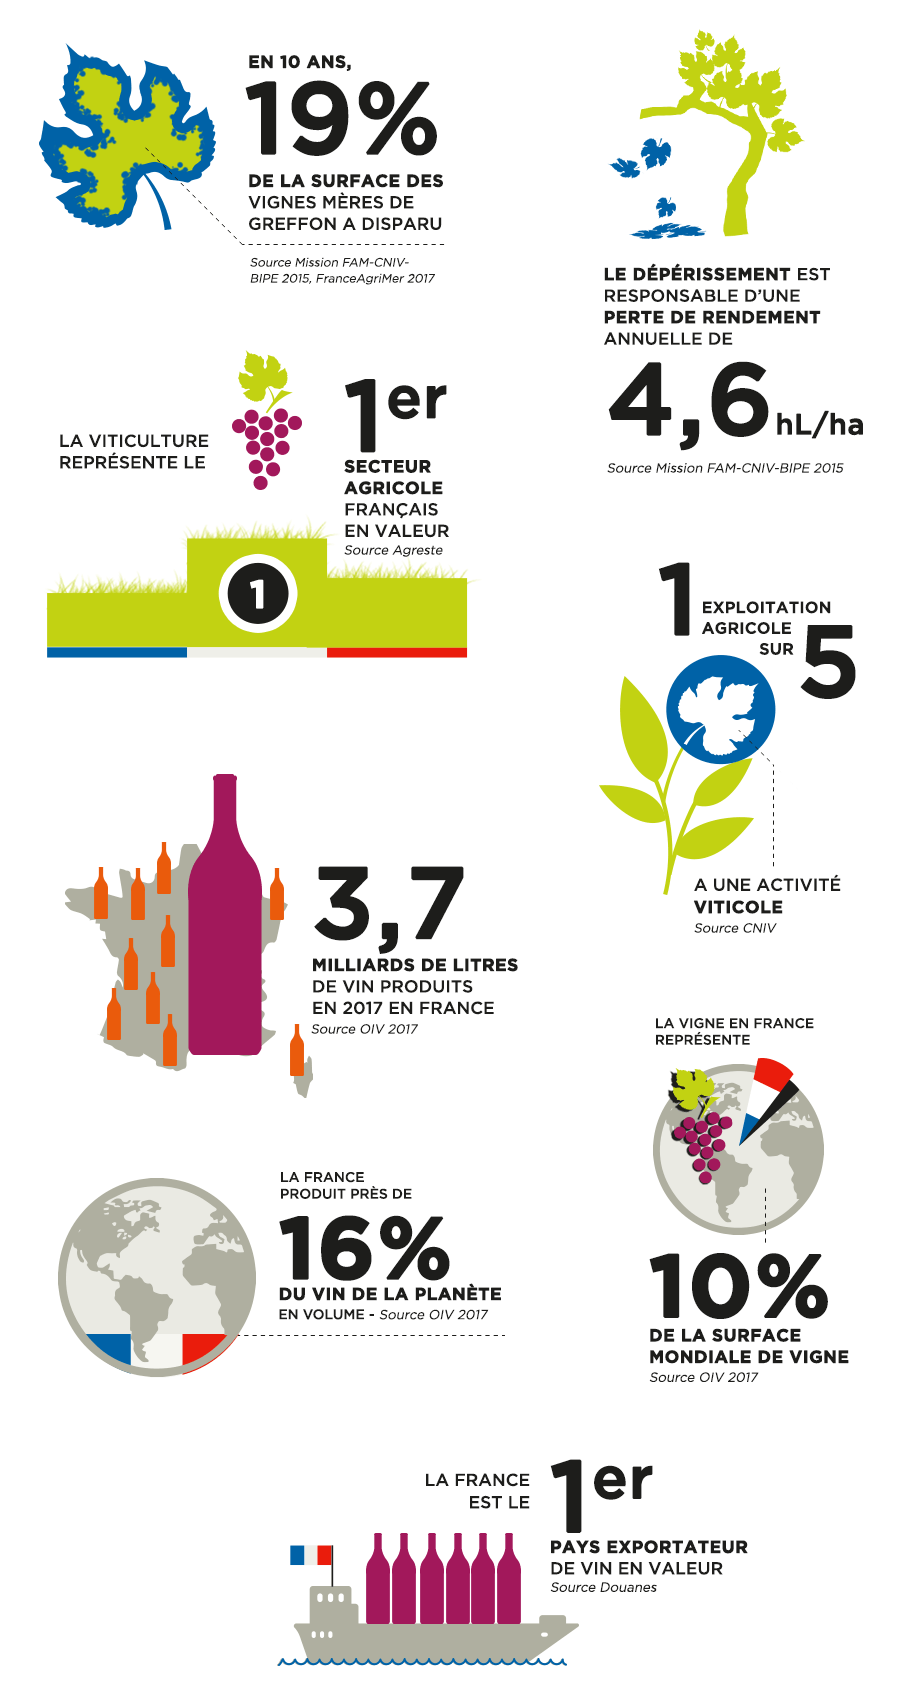 Les chiffres clés du dépérissement de la vigne